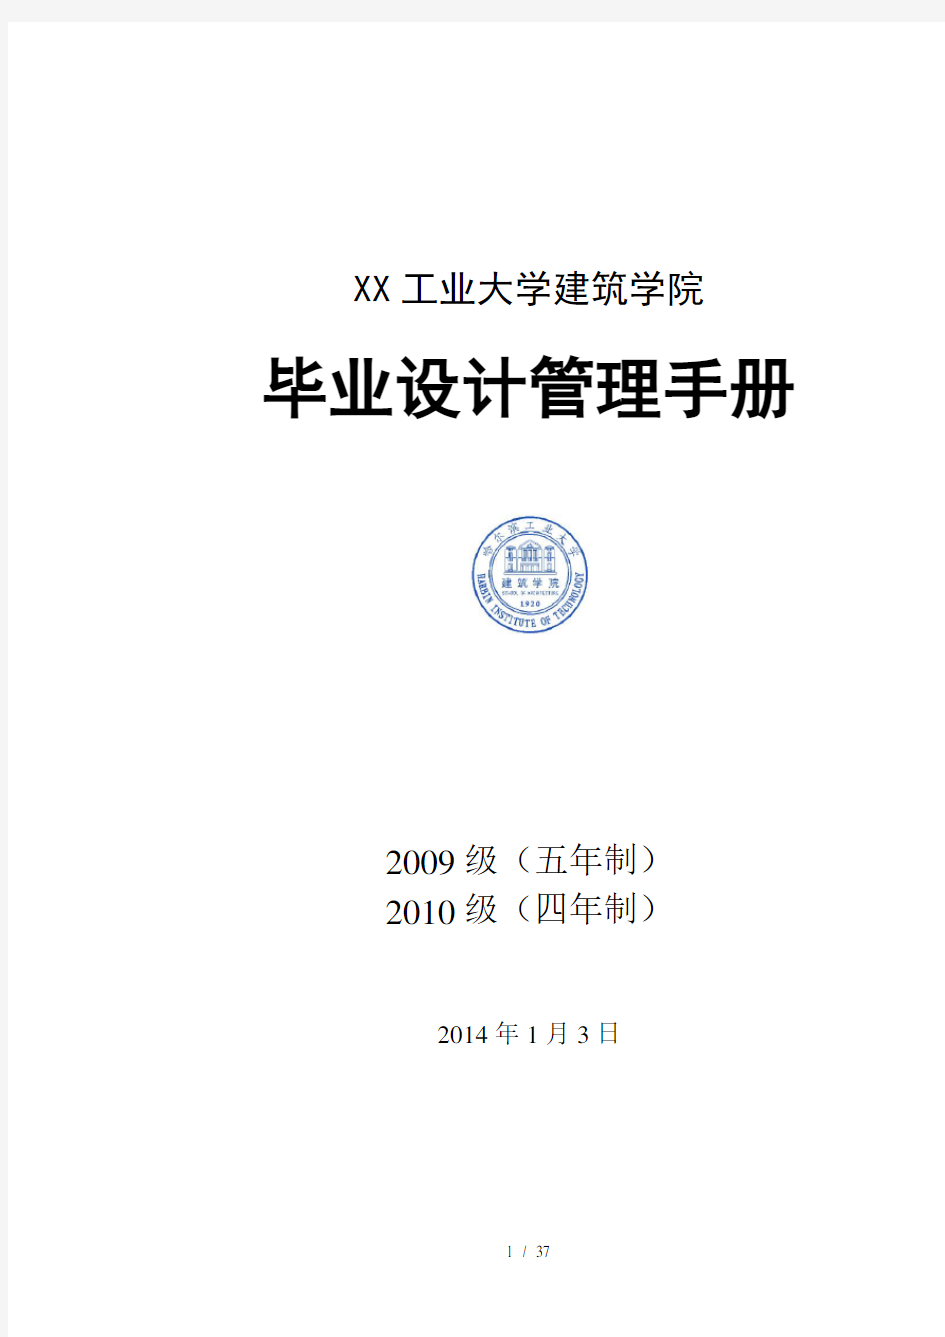 XXXX届毕业设计管理手册